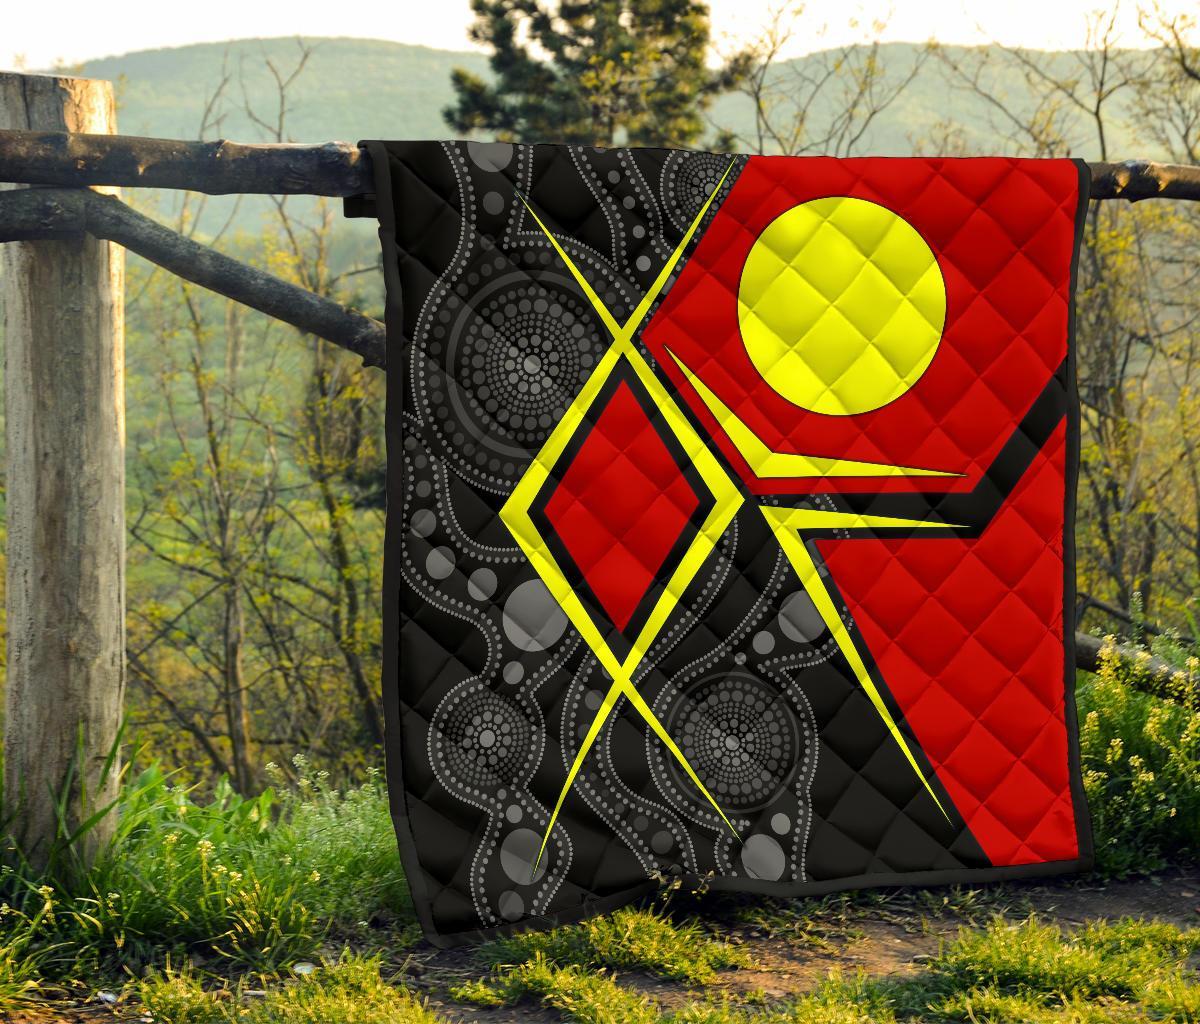 aboriginal-premium-quilt-indigenous-legend